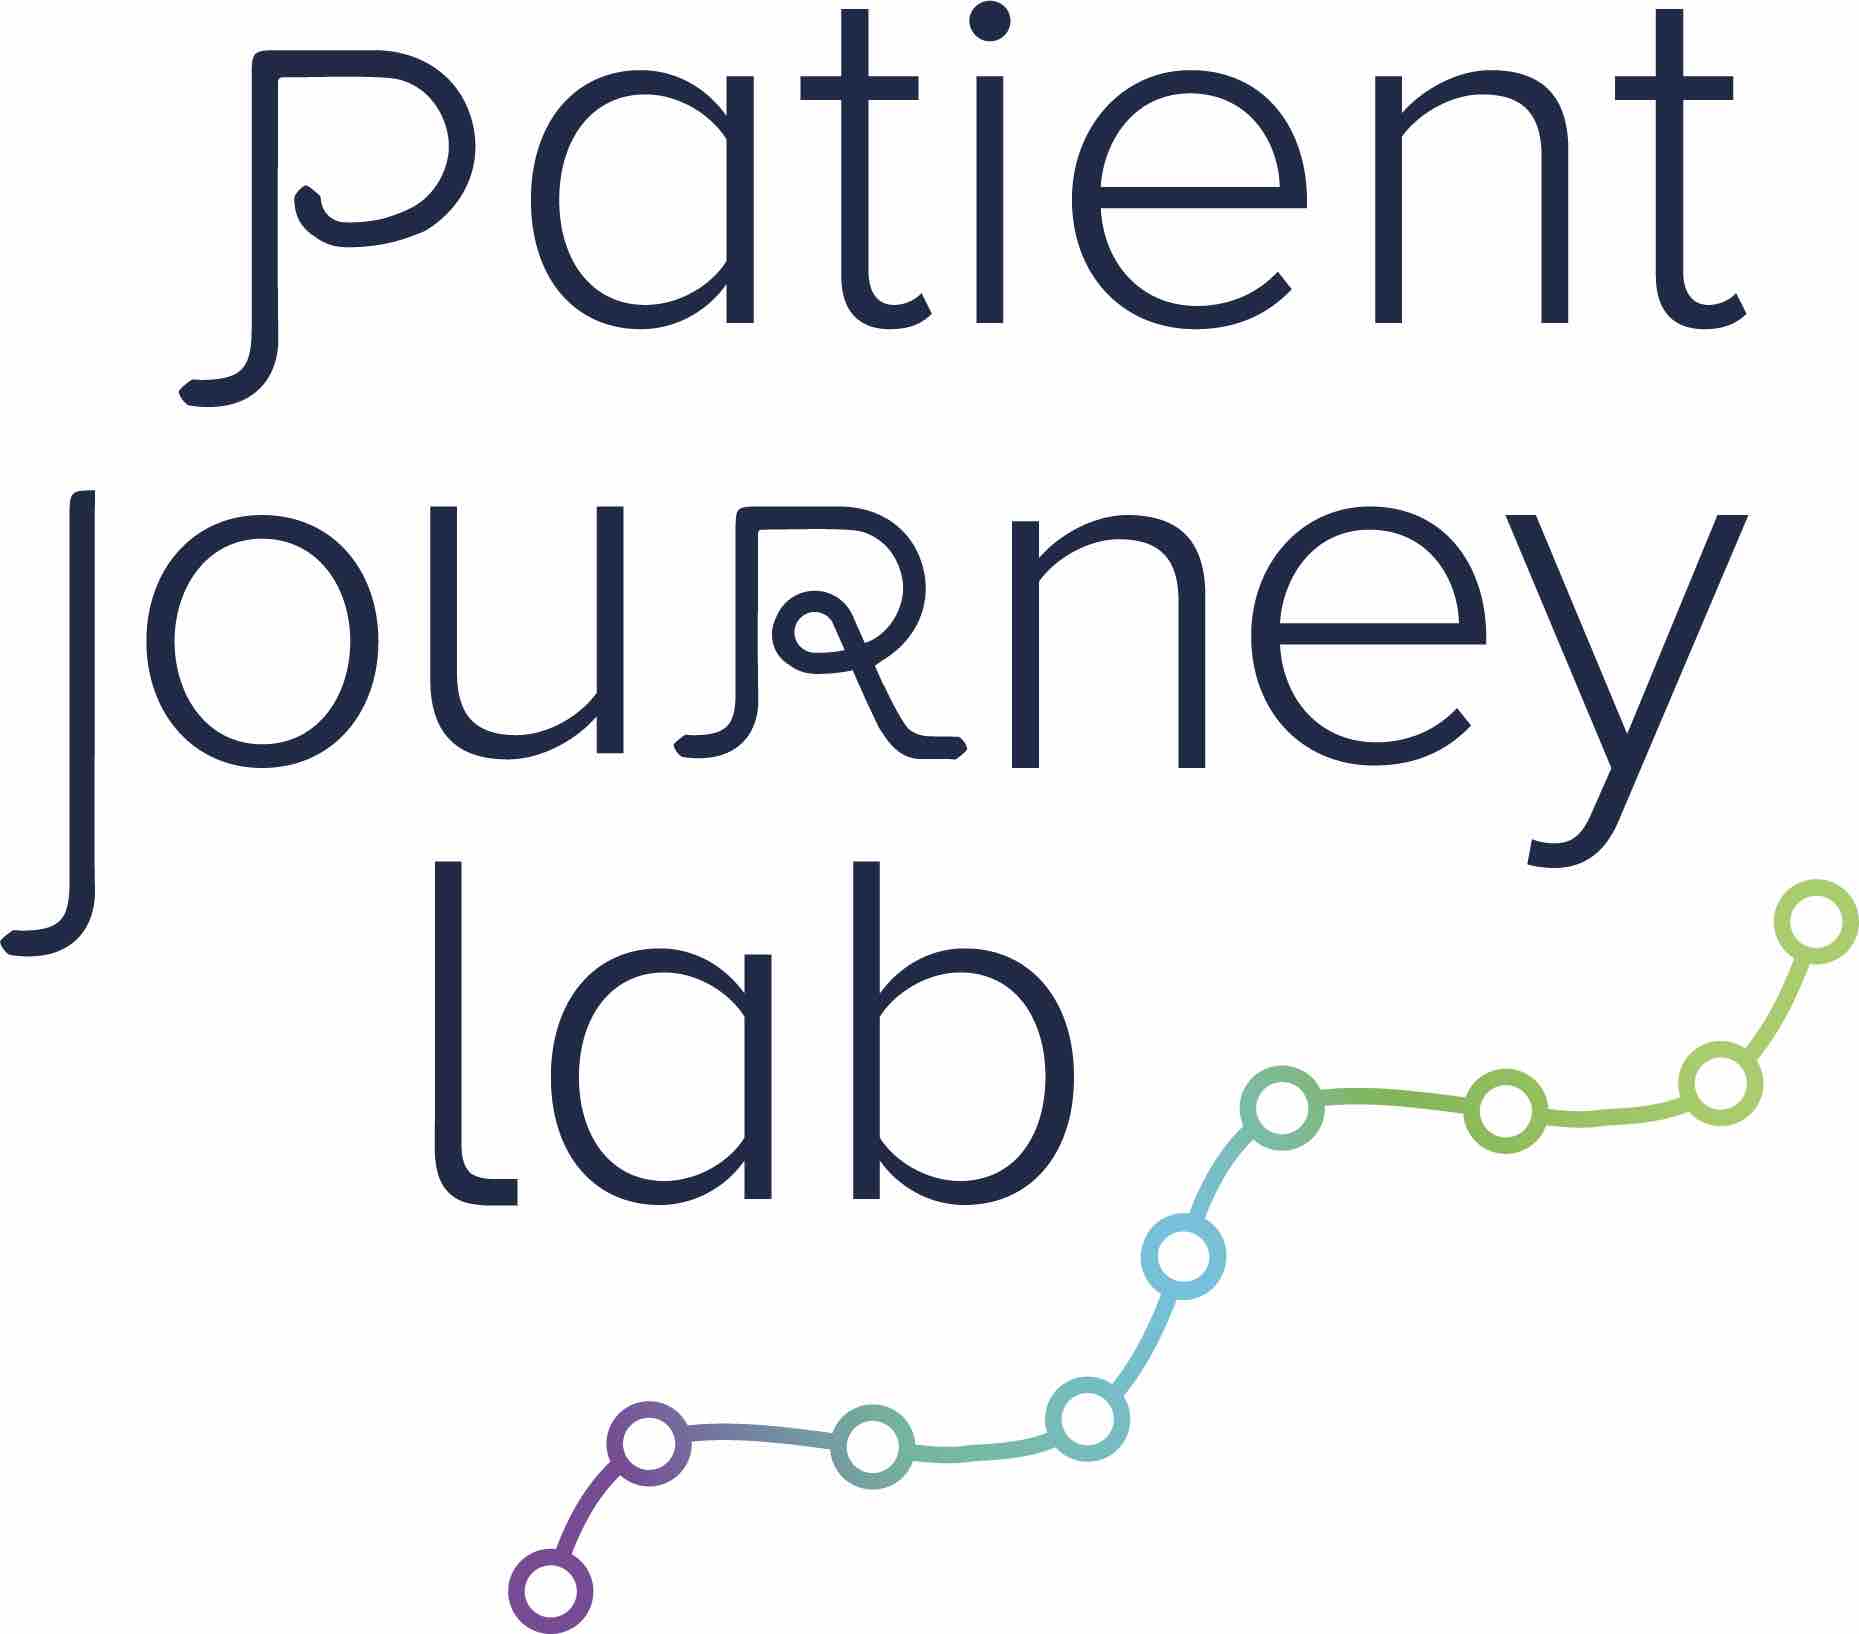 Patient Journey Lab